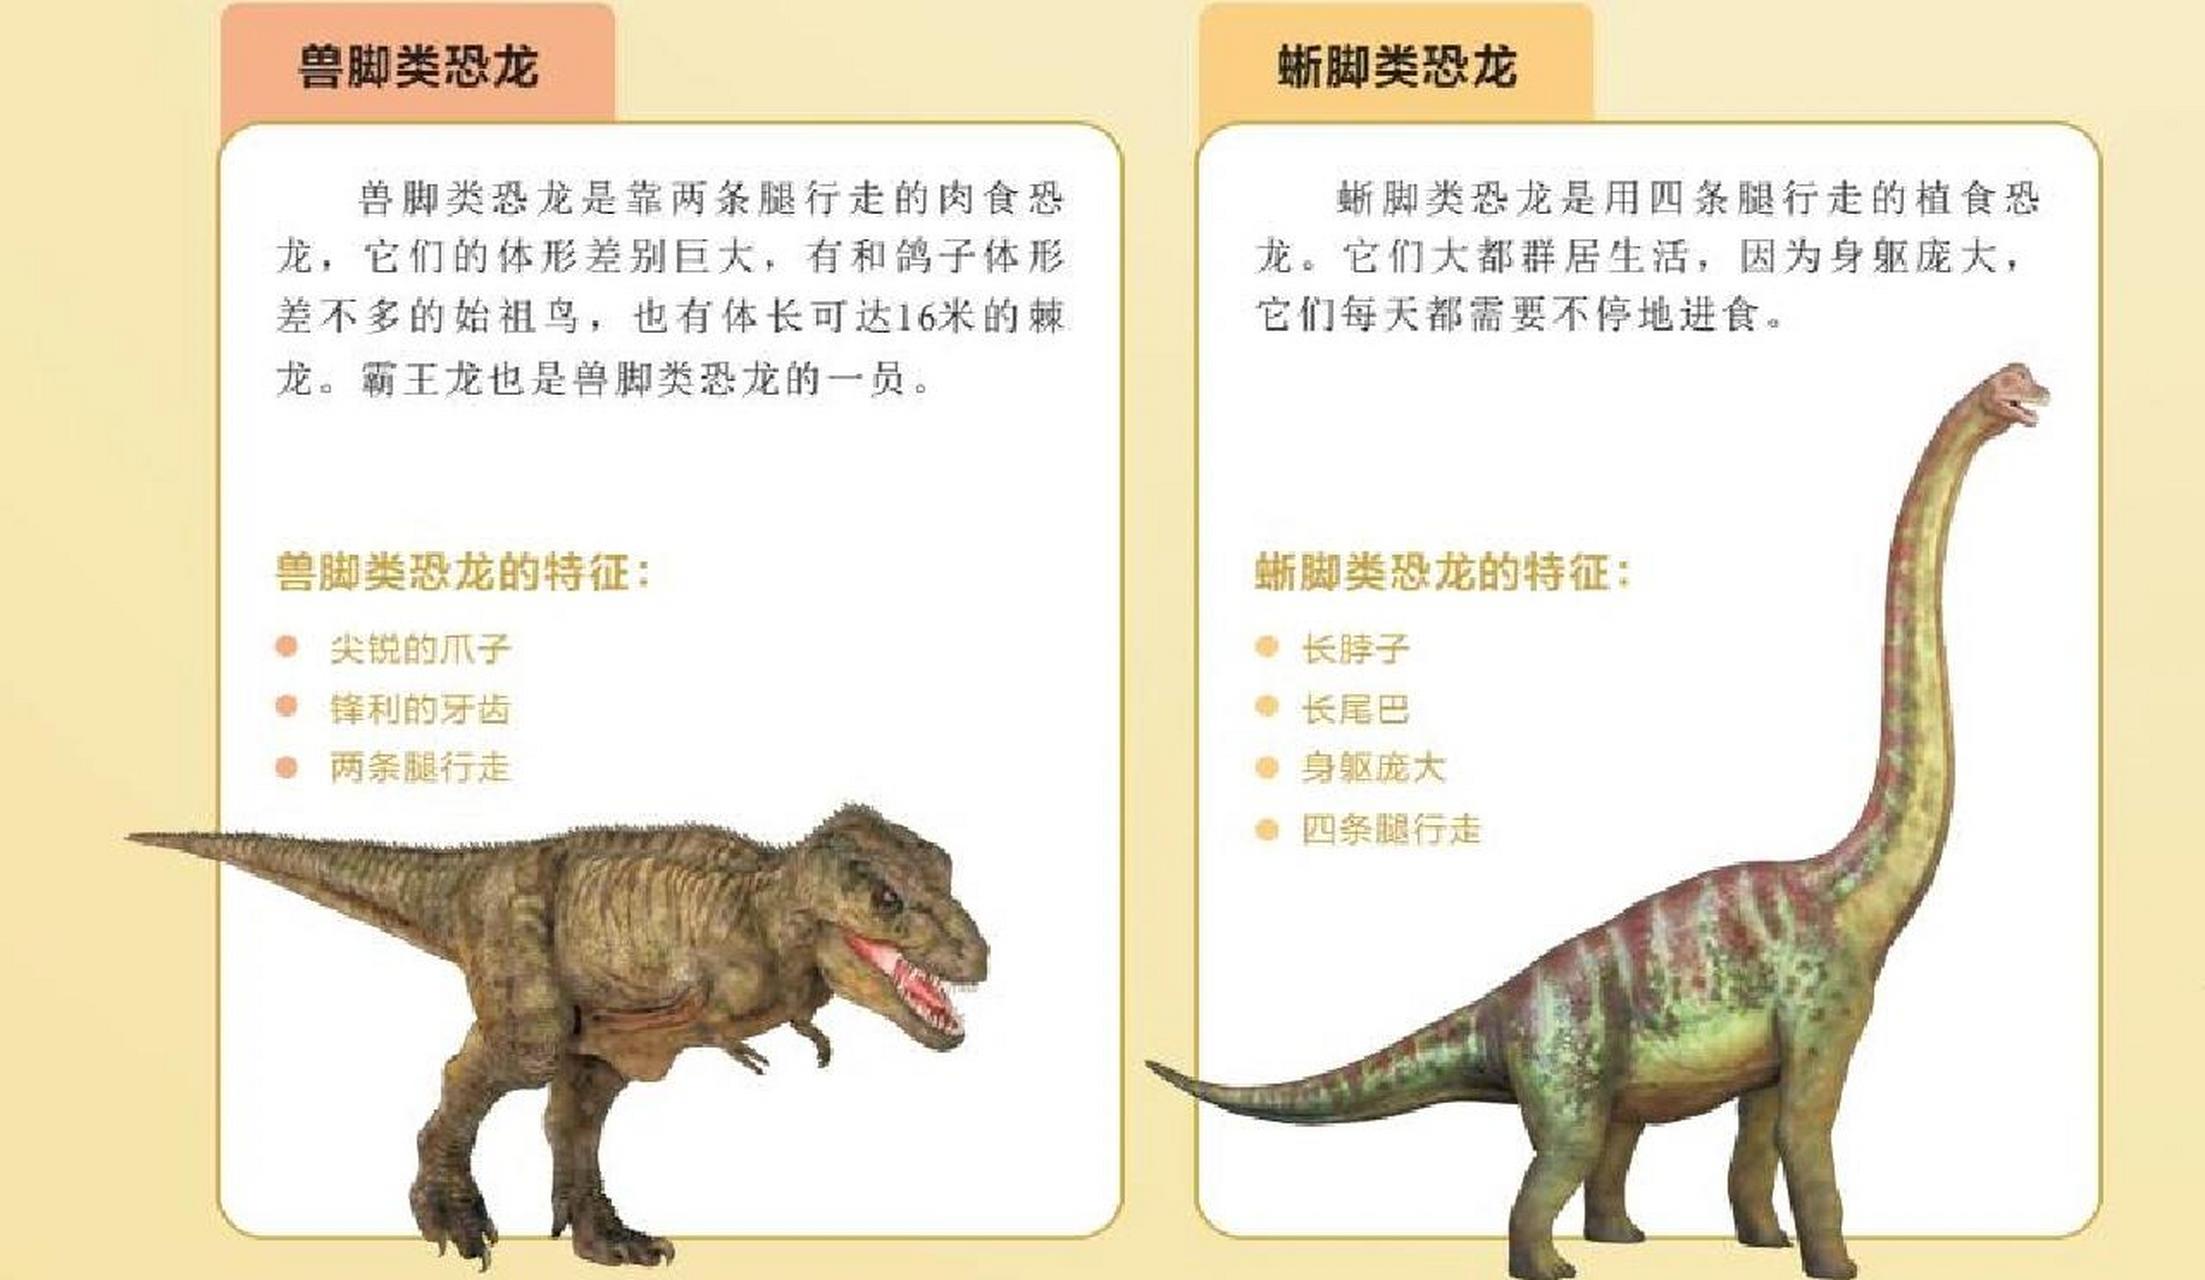 03恐龙的分类  恐龙根据骨盆结构的特征可以分为两大类